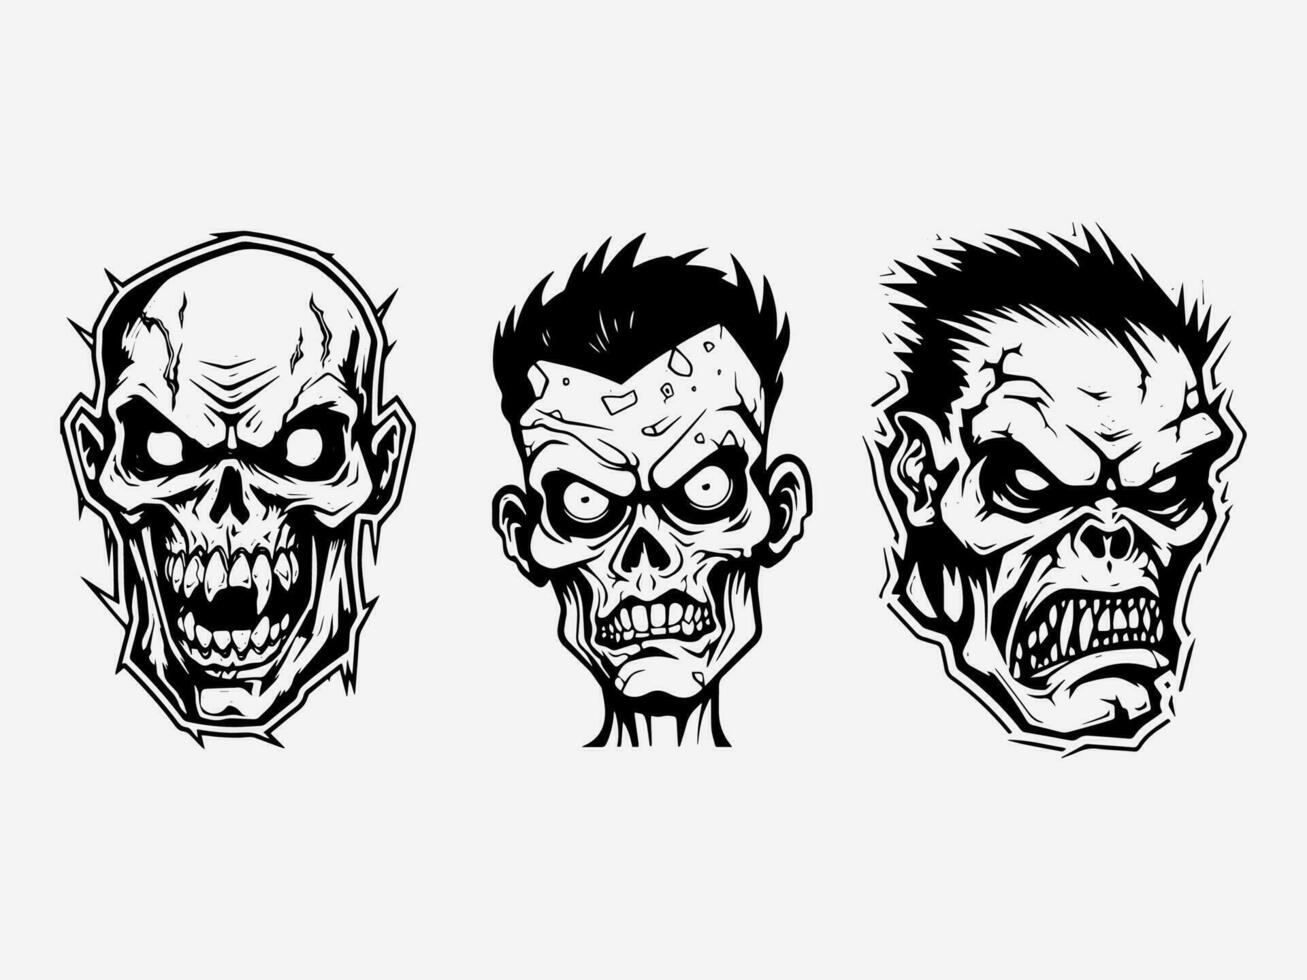 Siniestro zombi mano dibujado logo diseño ilustración vector